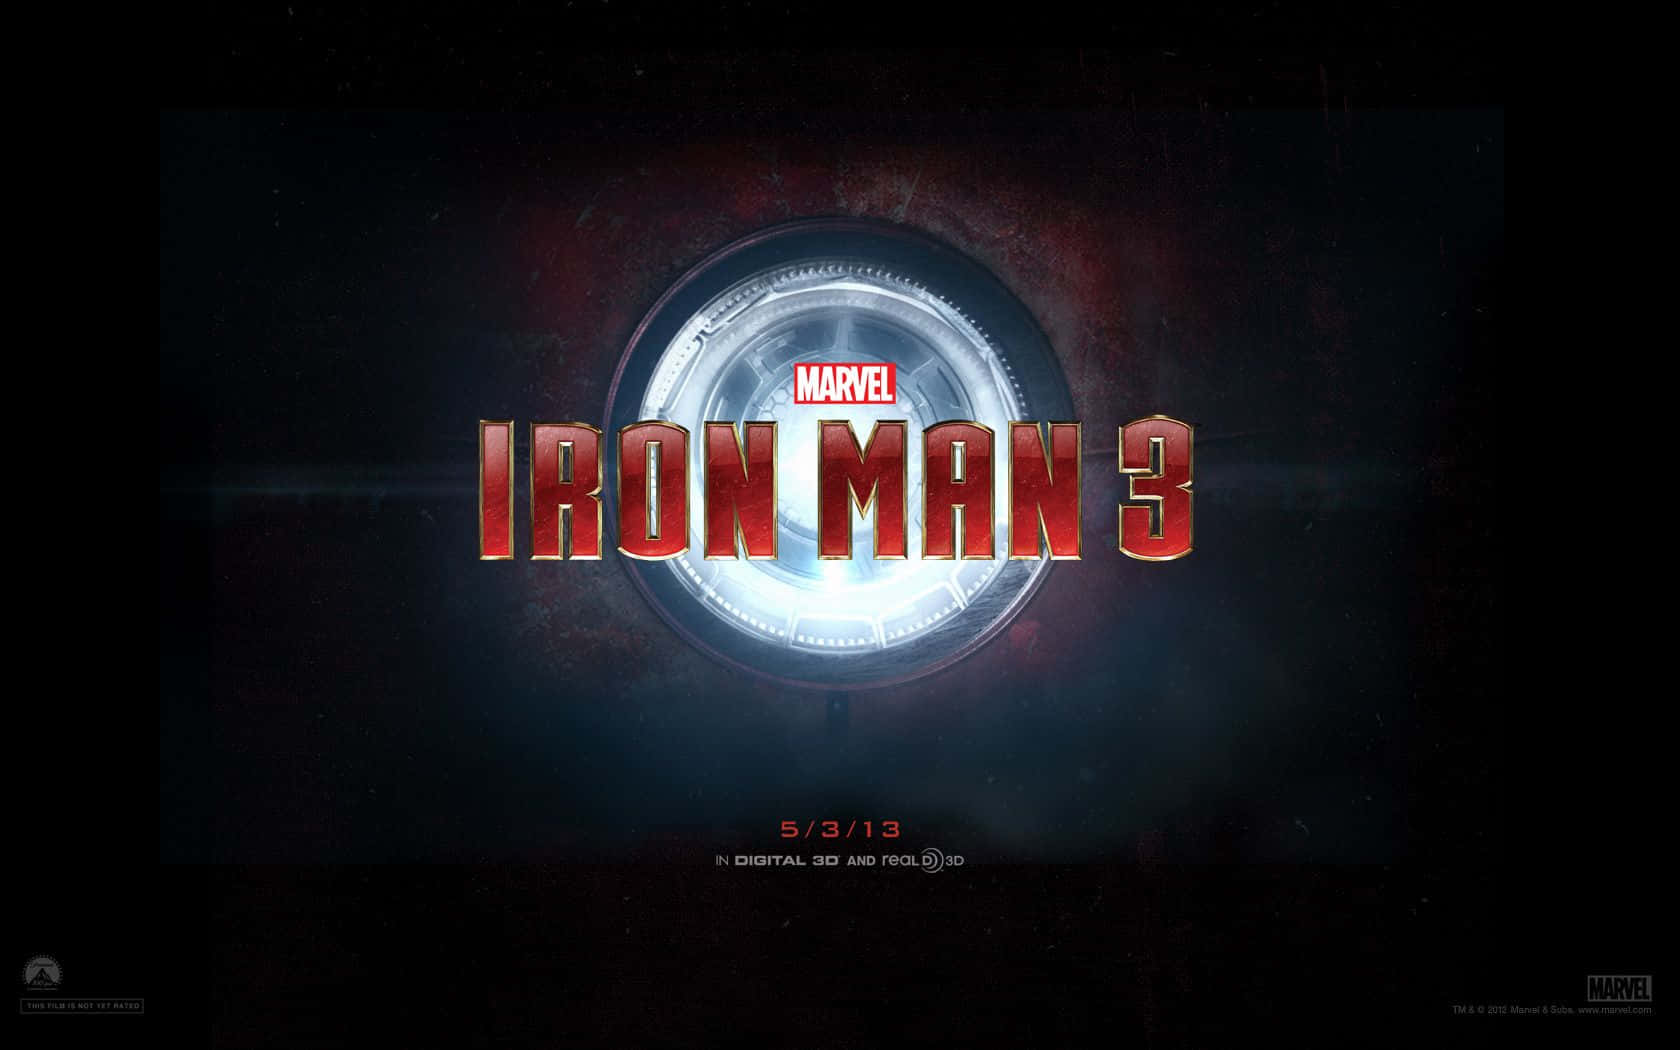 Iron Man 3-logo med en mørk baggrund